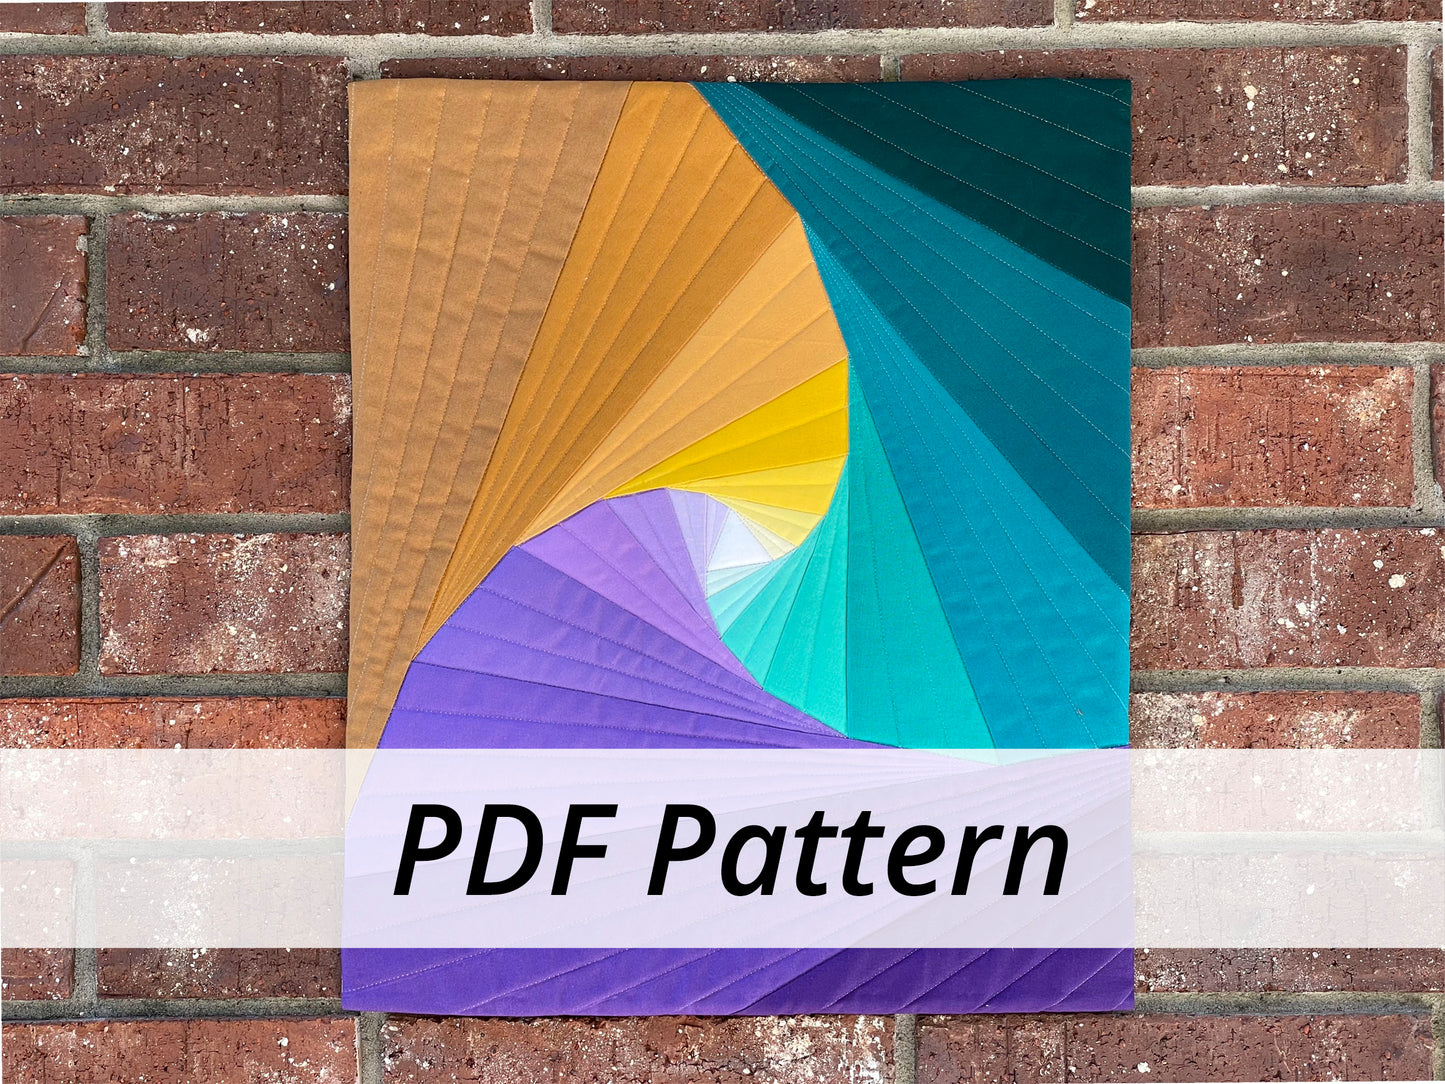 Spiraling Triangles Mini PDF Pattern